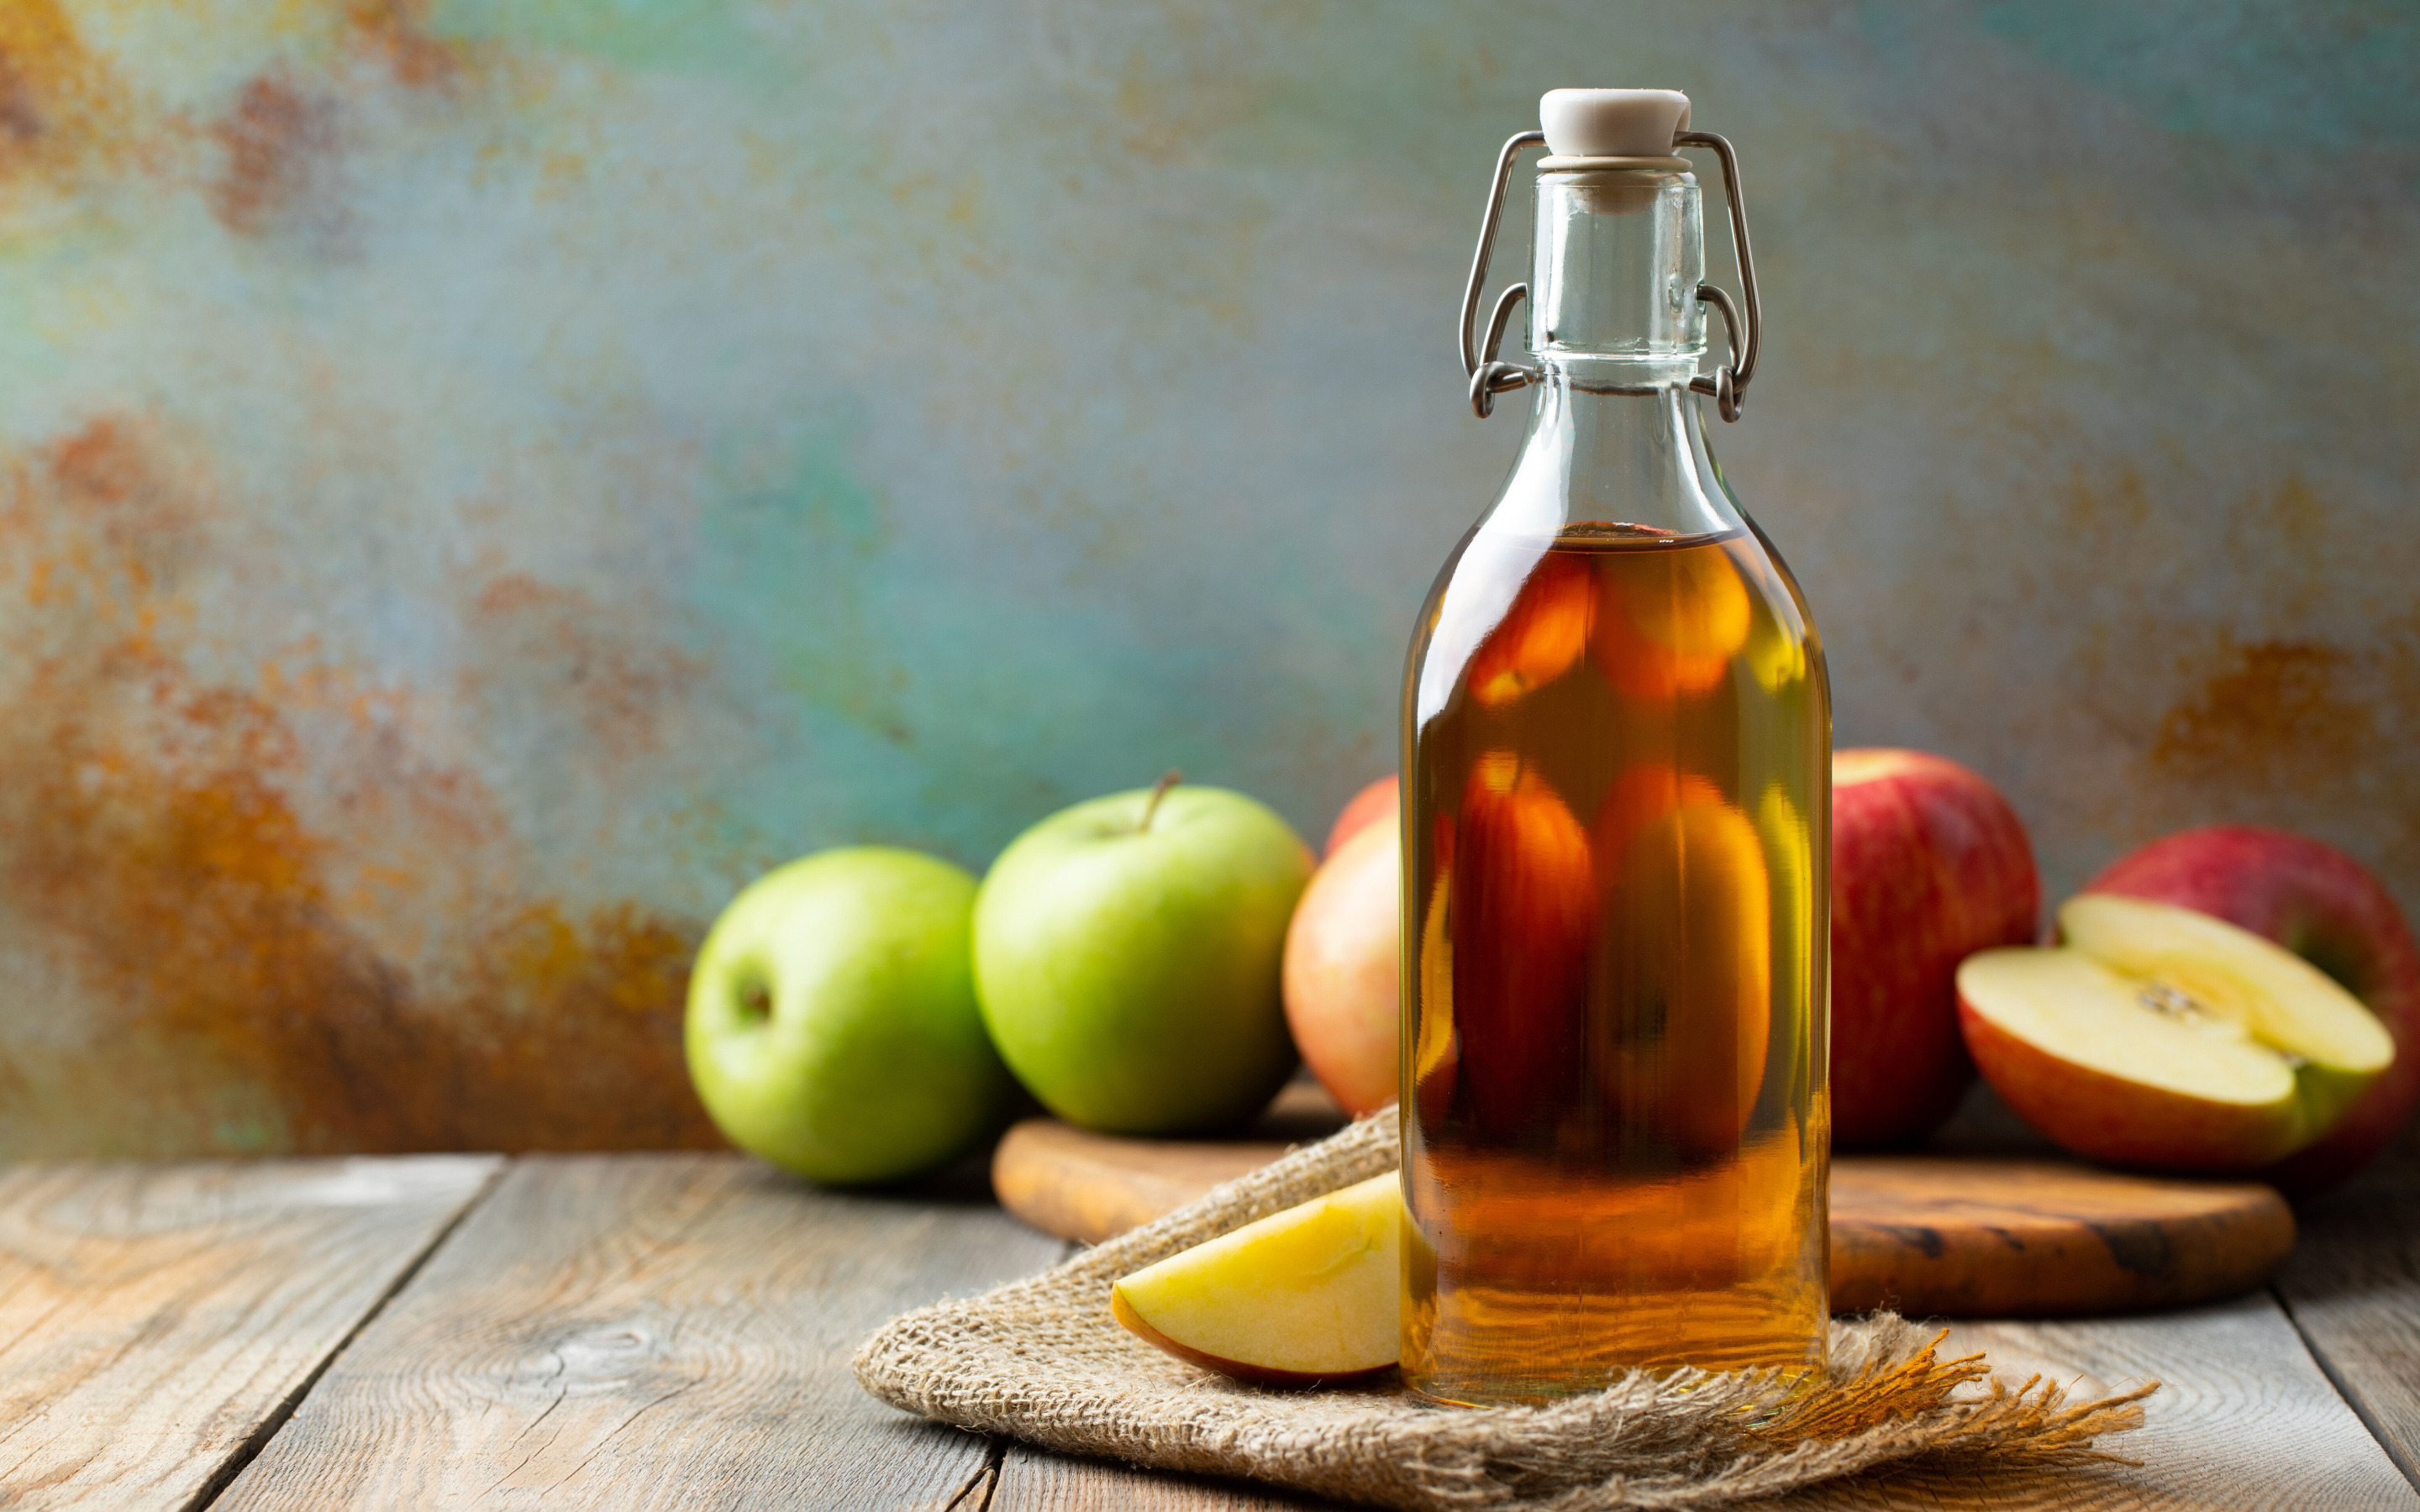 Яблочный уксус Elma Sirkesi. Уксус Apple Cider Vinegar. Уксус яблочный сидр. Яблочный уксус бутылка. Вода с яблоком в бутылке